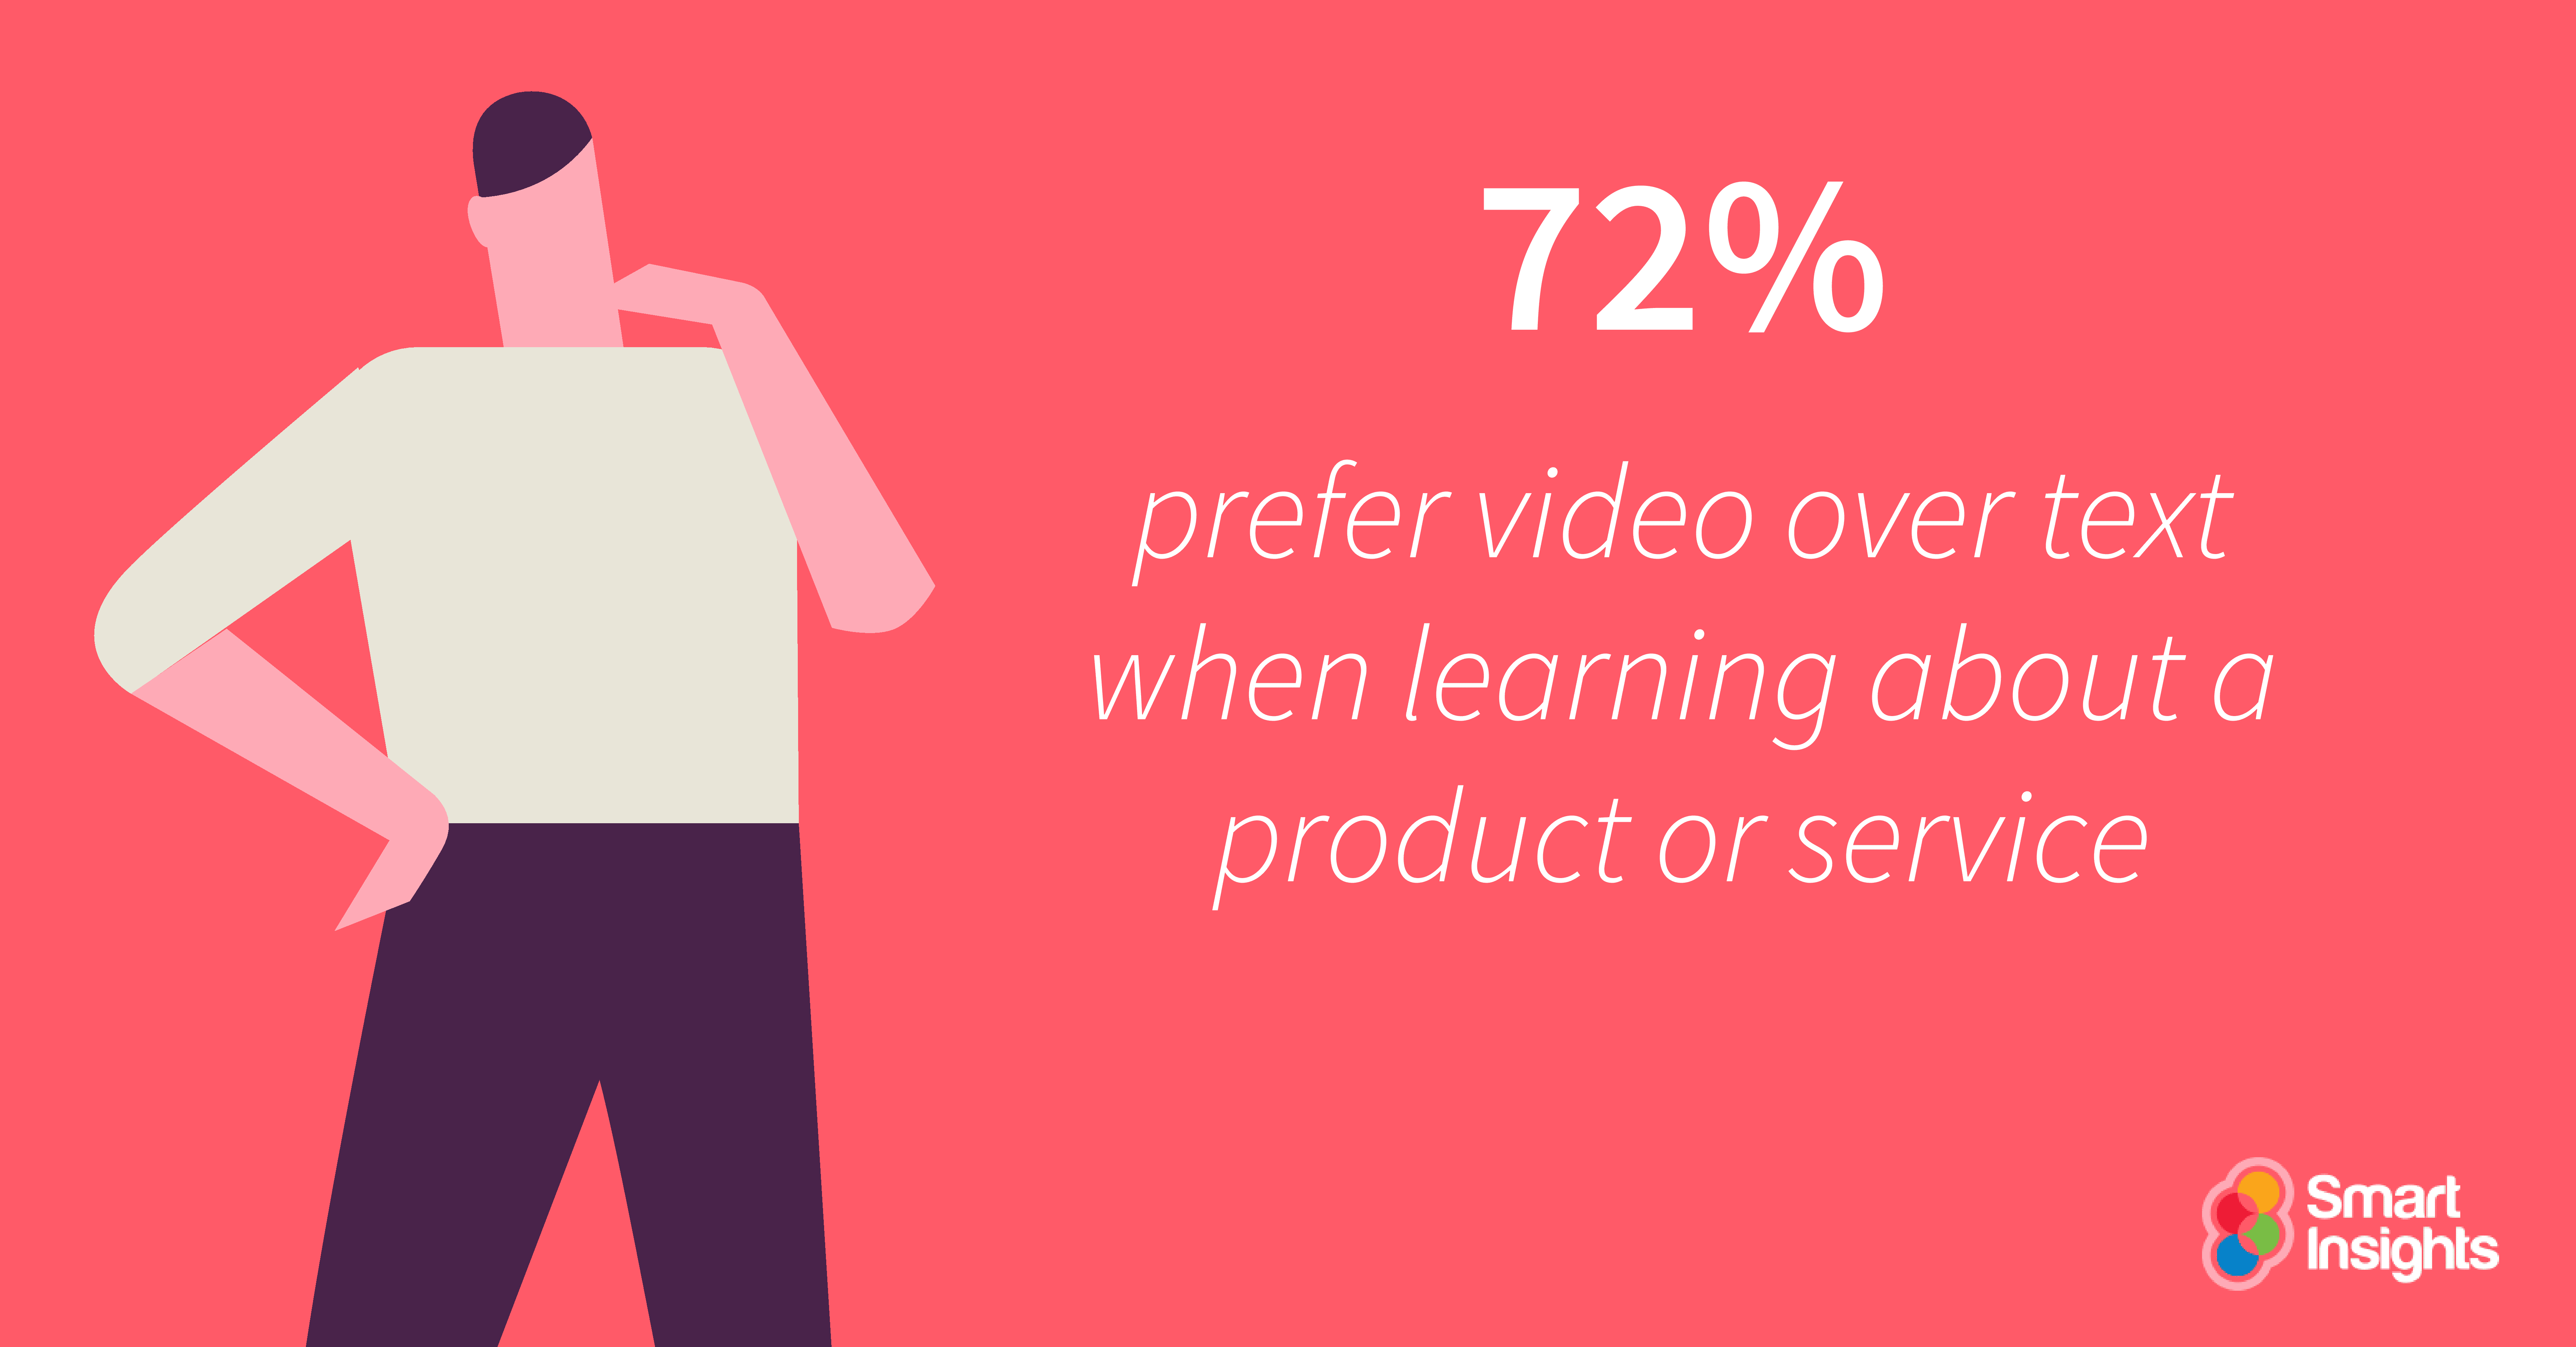 72-preferiscono-video-over-text-quando-learning-su-un-prodotto o servizio